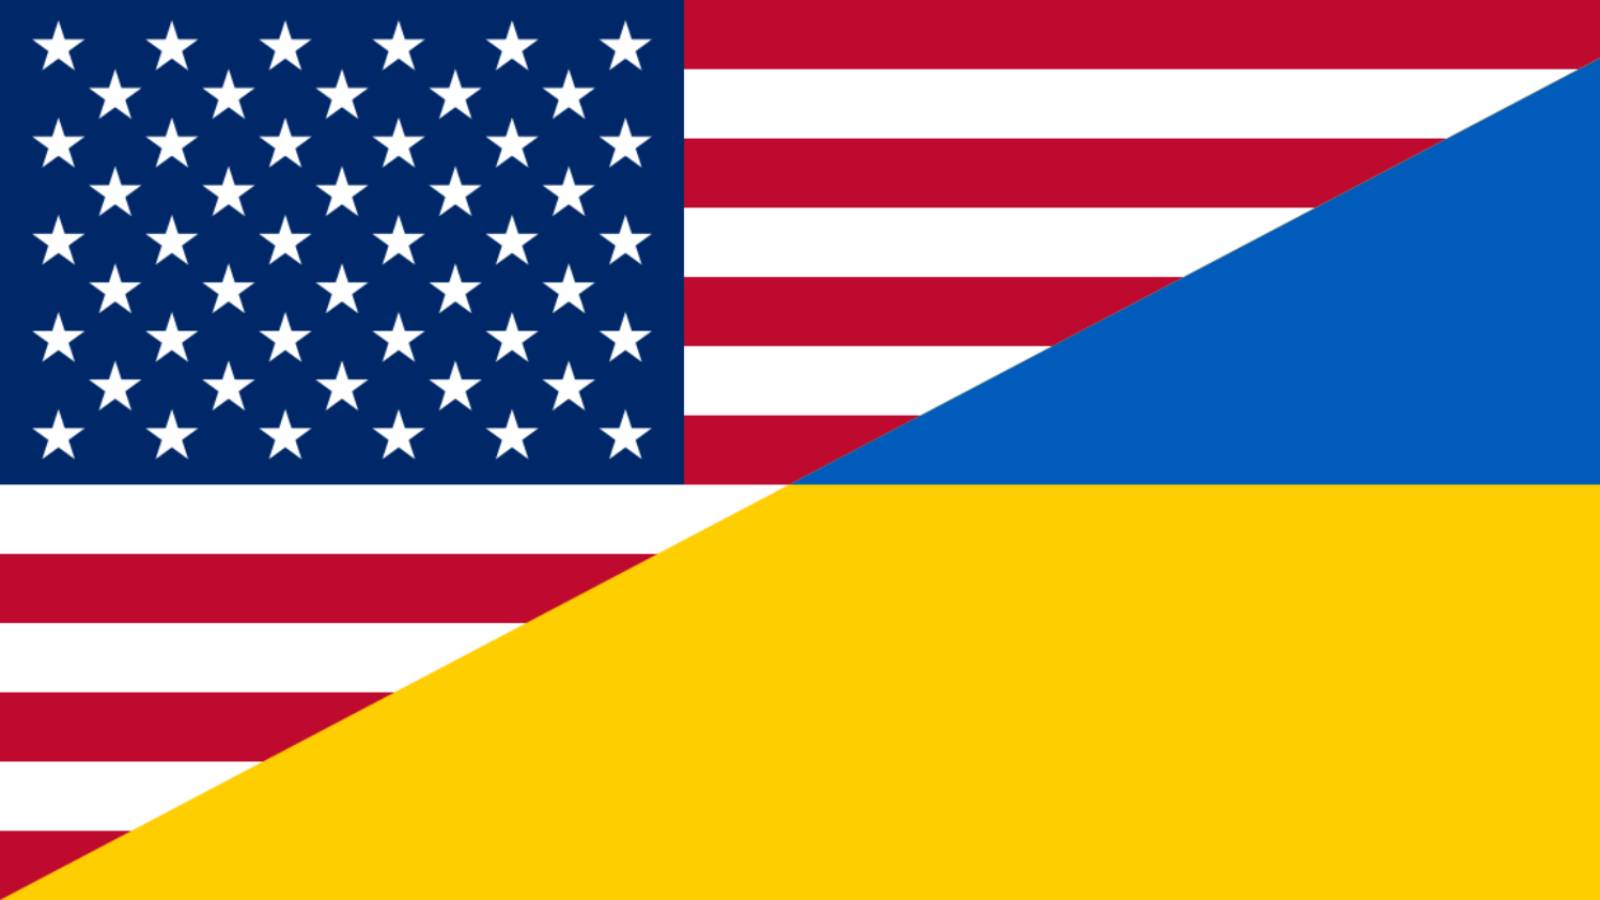 USA toimittaa uusia viimeisen sukupolven puolustusjärjestelmiä Ukrainalle